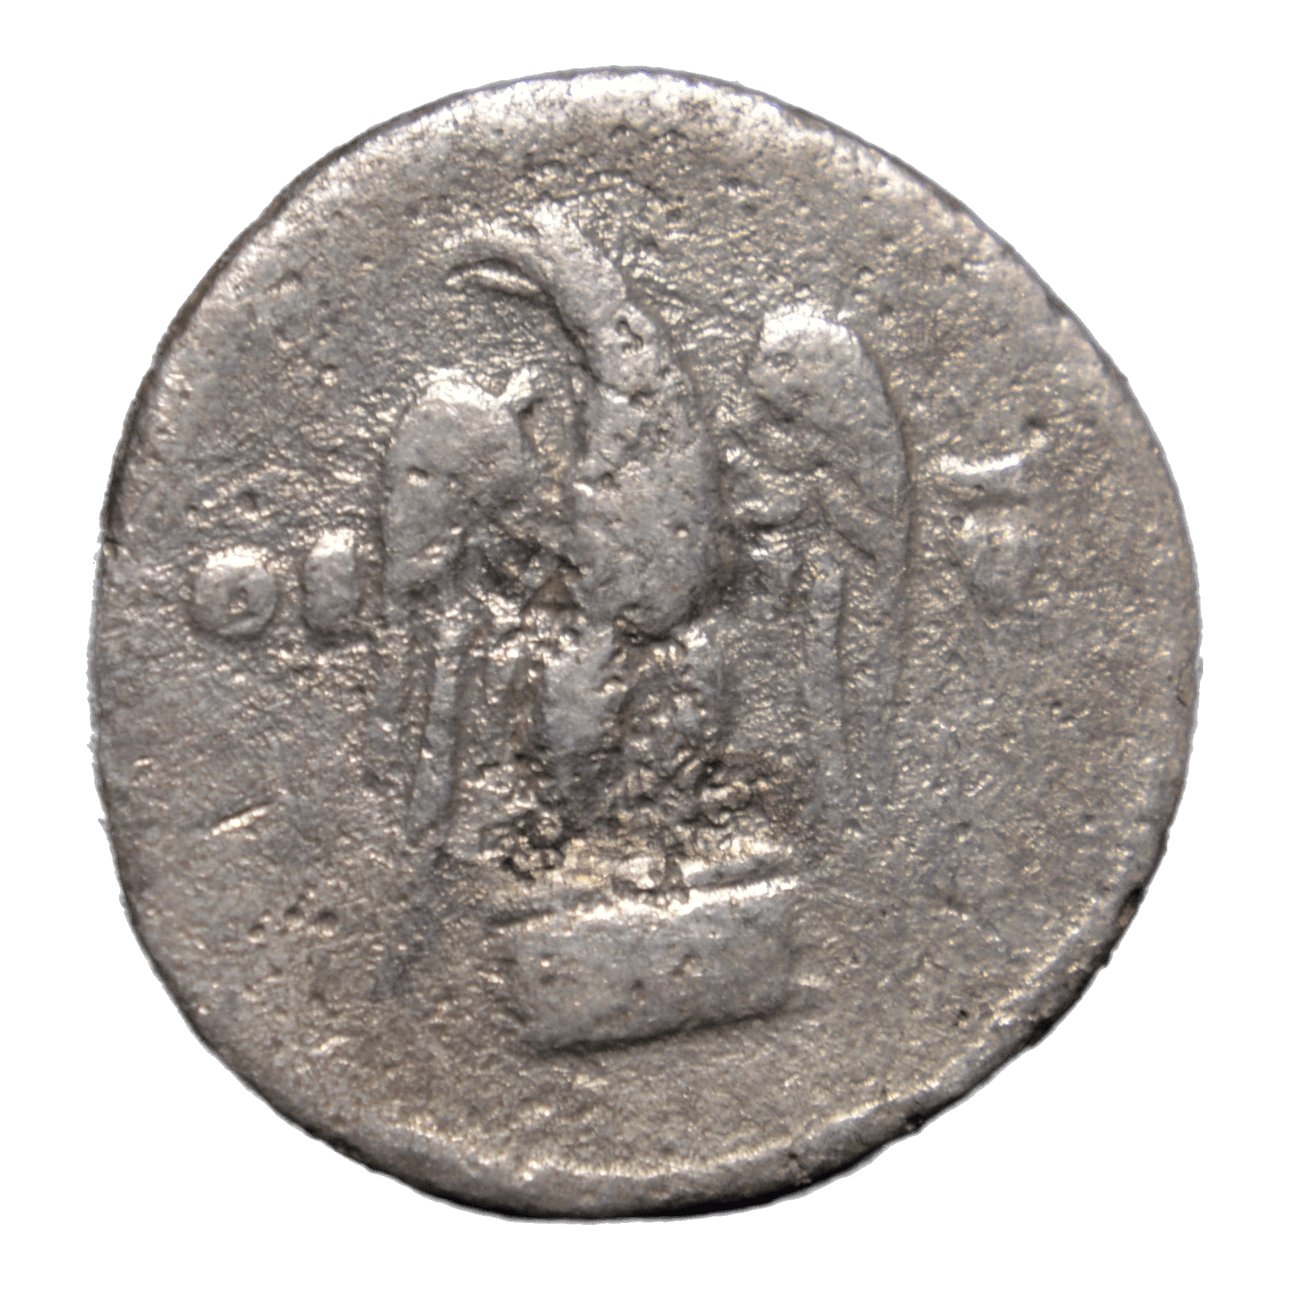 Vespasian 69-79AD - Rome. AR Denarius - Eagle - Premium Ancient Coins - denarius